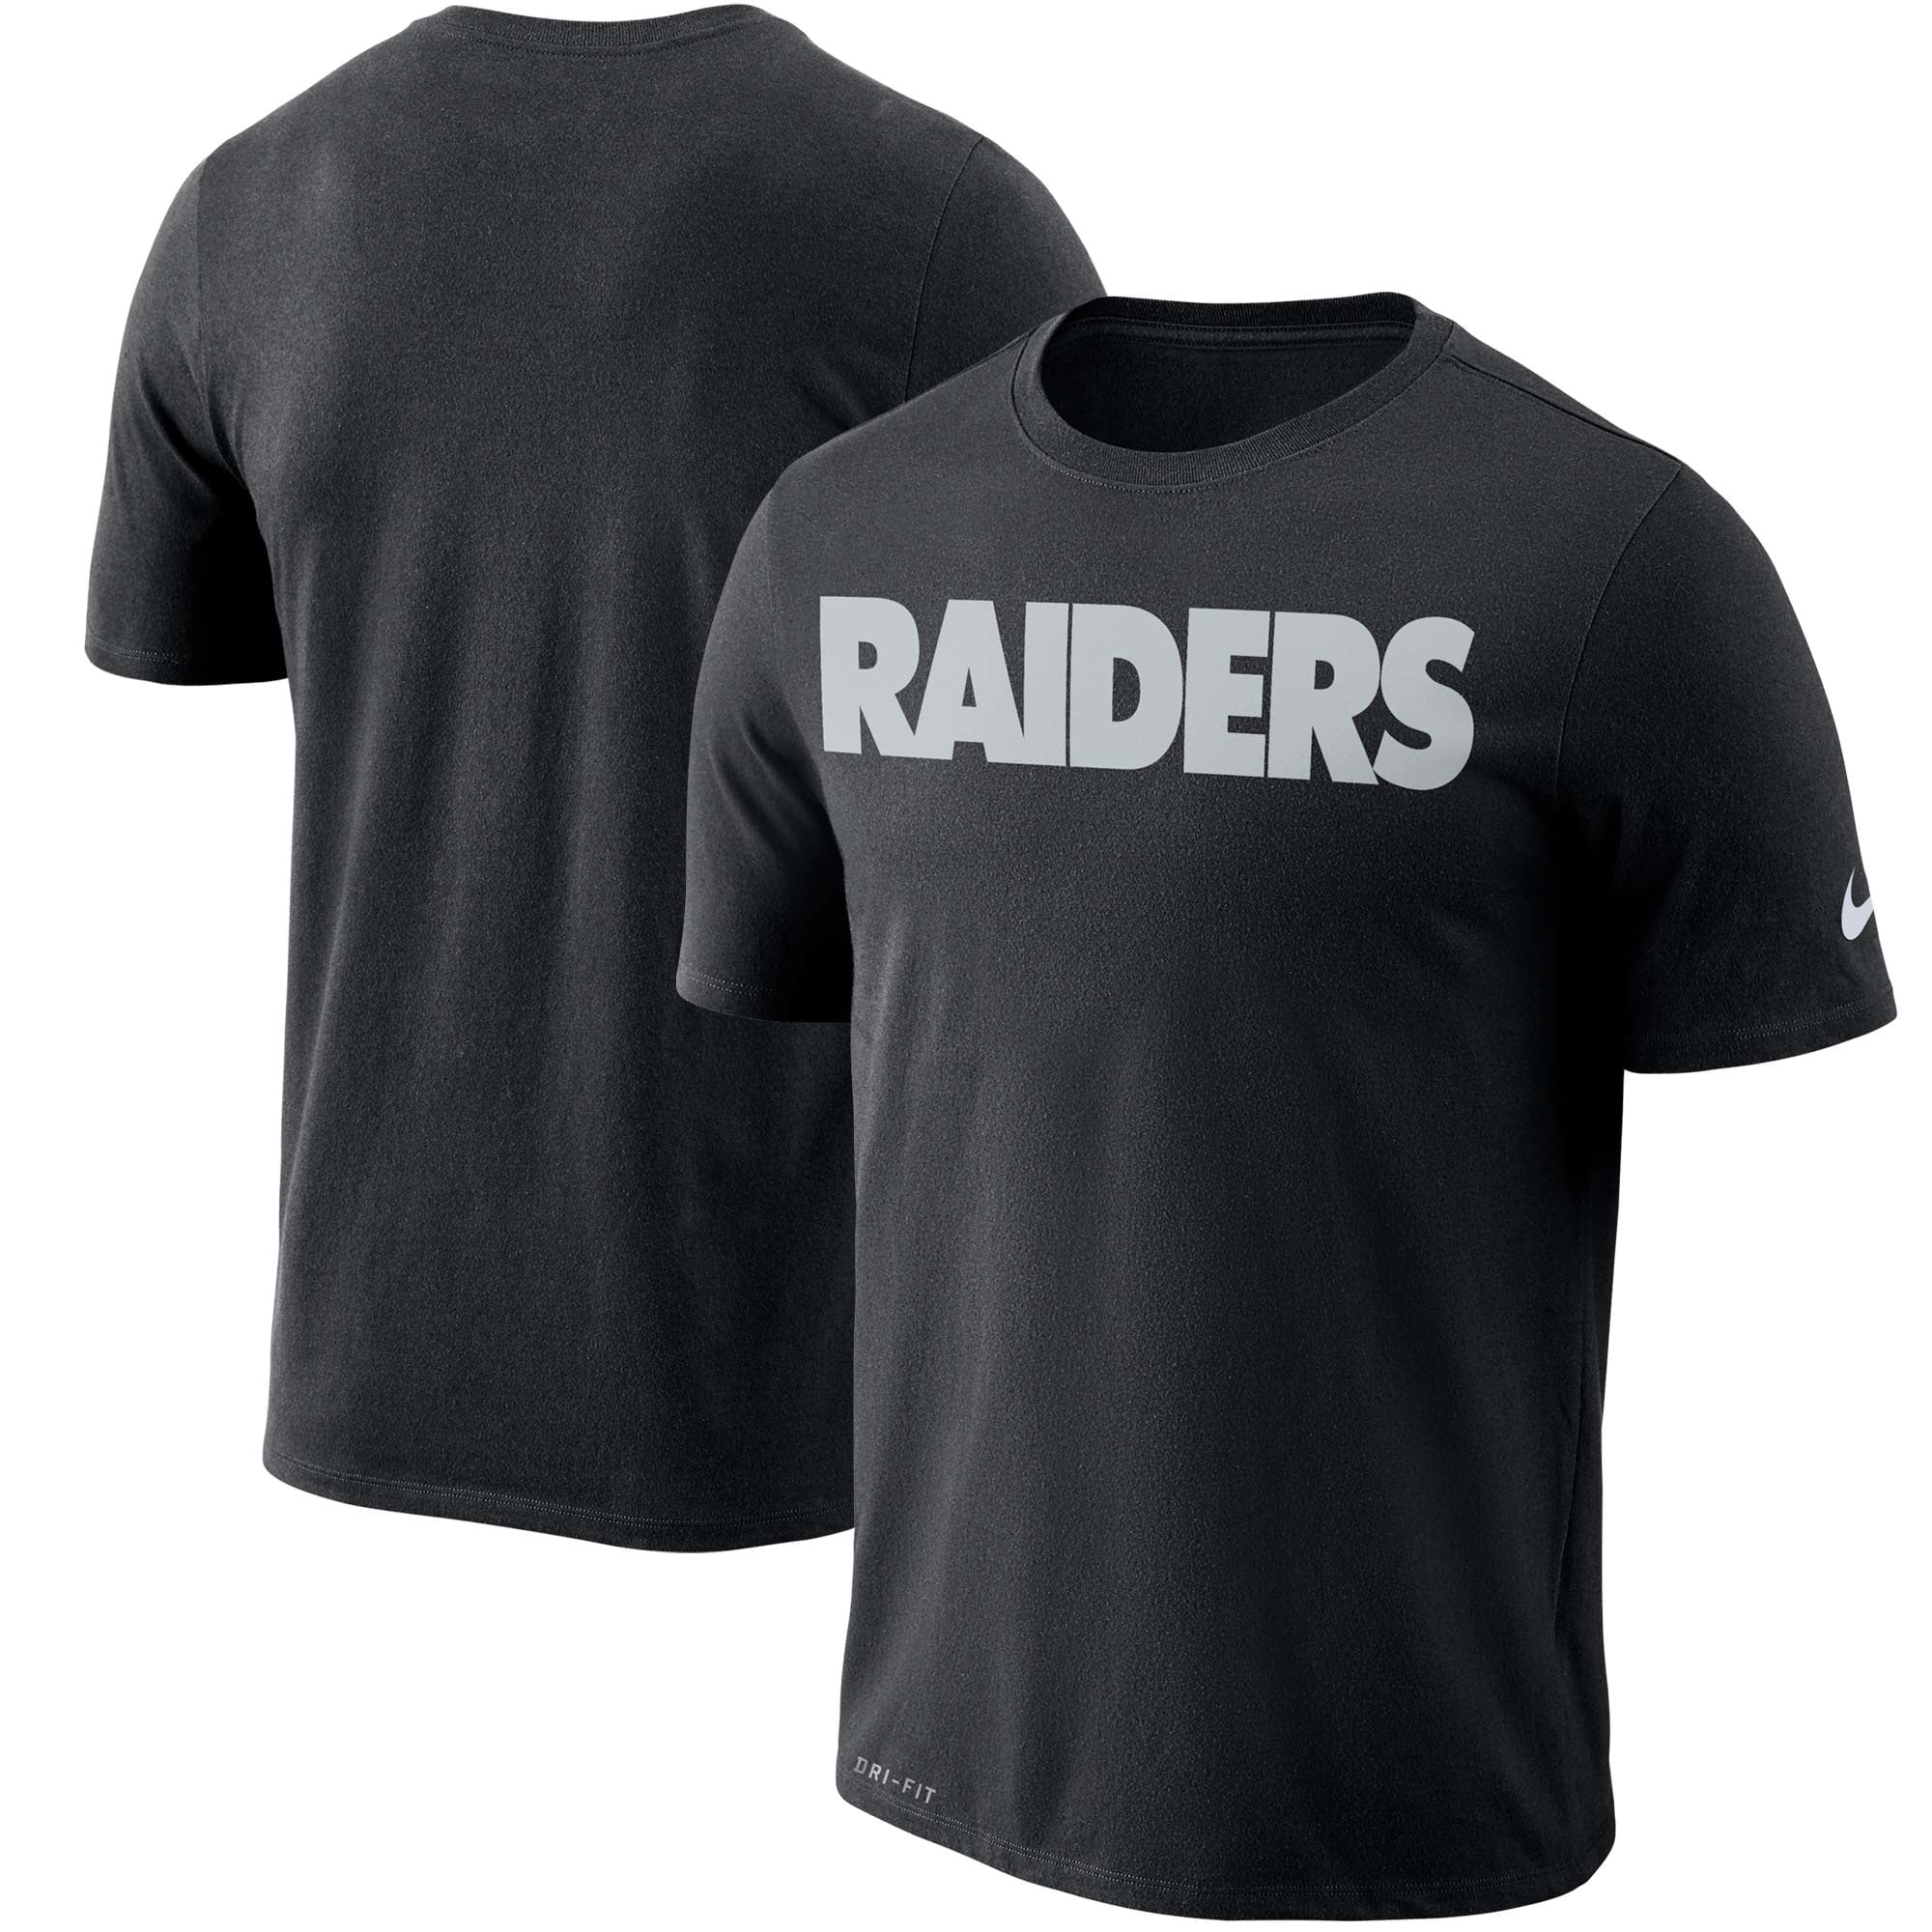 raiders dri fit shirts